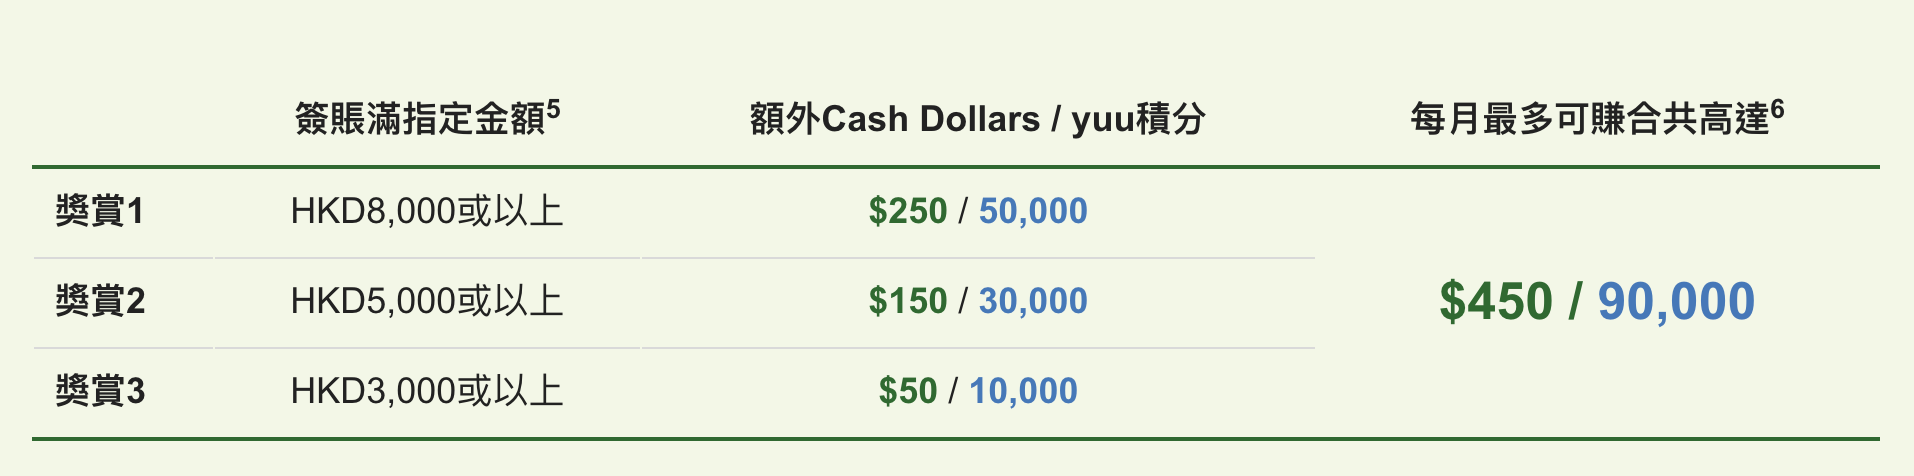 【恒生百老滙優惠】恒生信用卡於百老滙簽賬高達額外$900 Cash Dollars/180,000 yuu積分 /指定產品低至6折 / 每$1 Cash Dollar當HK$2洗！ 